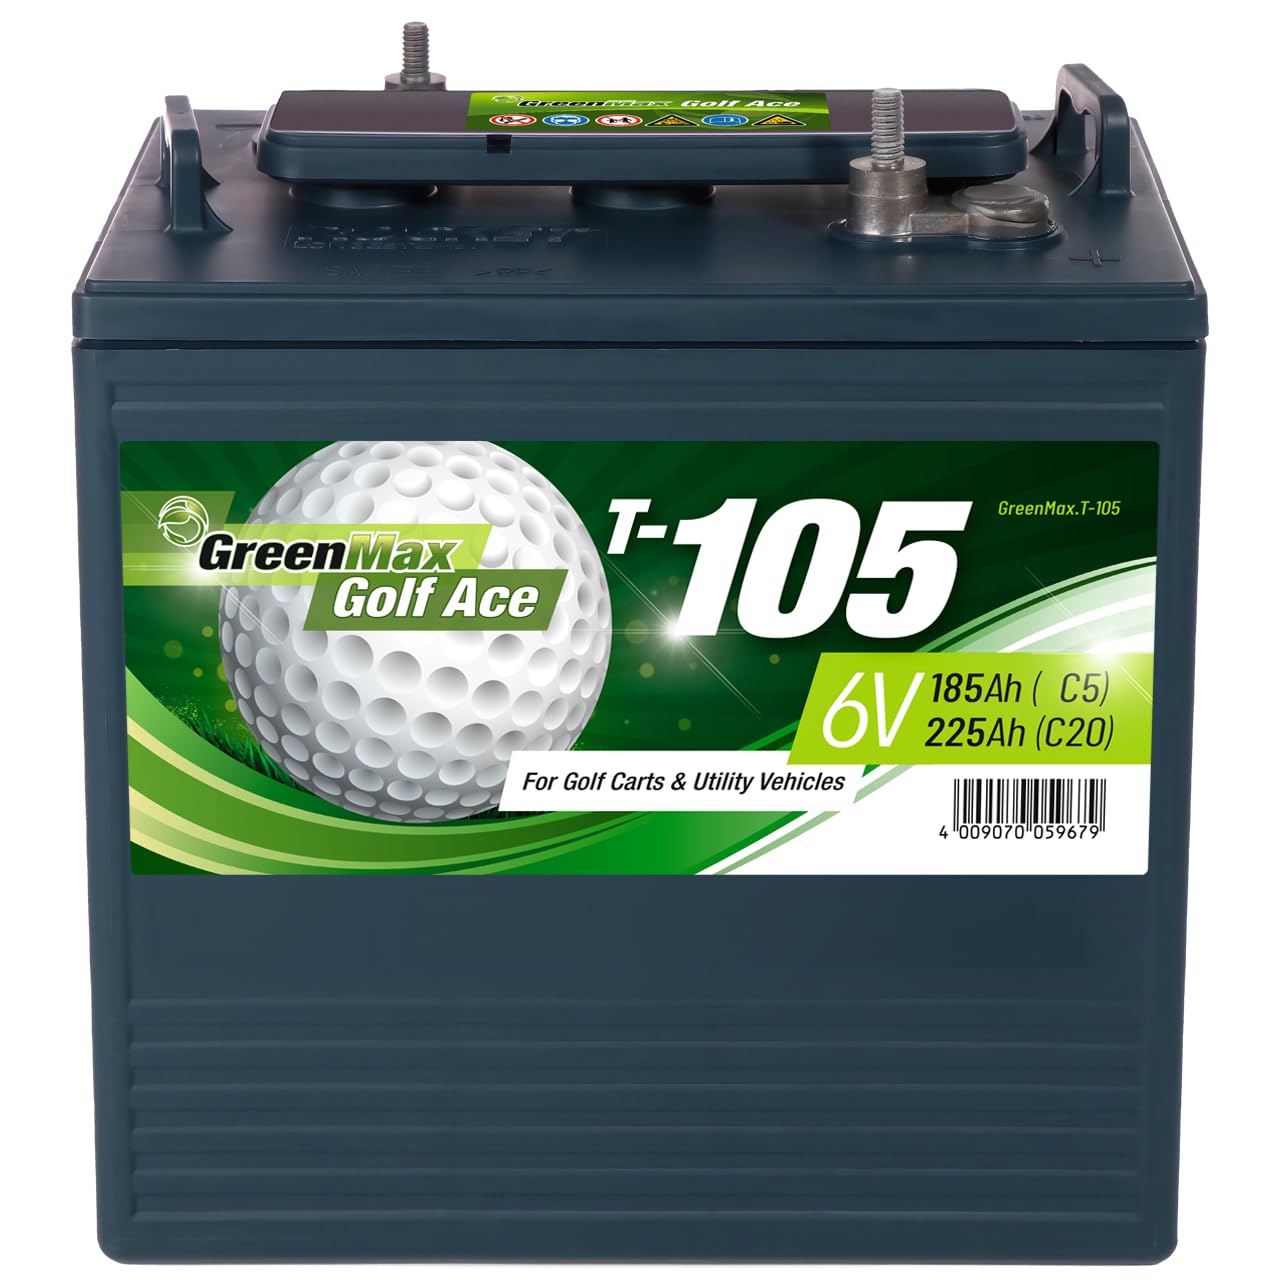 GreenMax Golf Ace T-105 (6V 225Ah) - Hochleistungs-Blei-Säure-Batterie für Golfcarts und Elektrofahrzeuge - Zuverlässig, Langlebig, Effizient, 99% Recycelbar von BIG